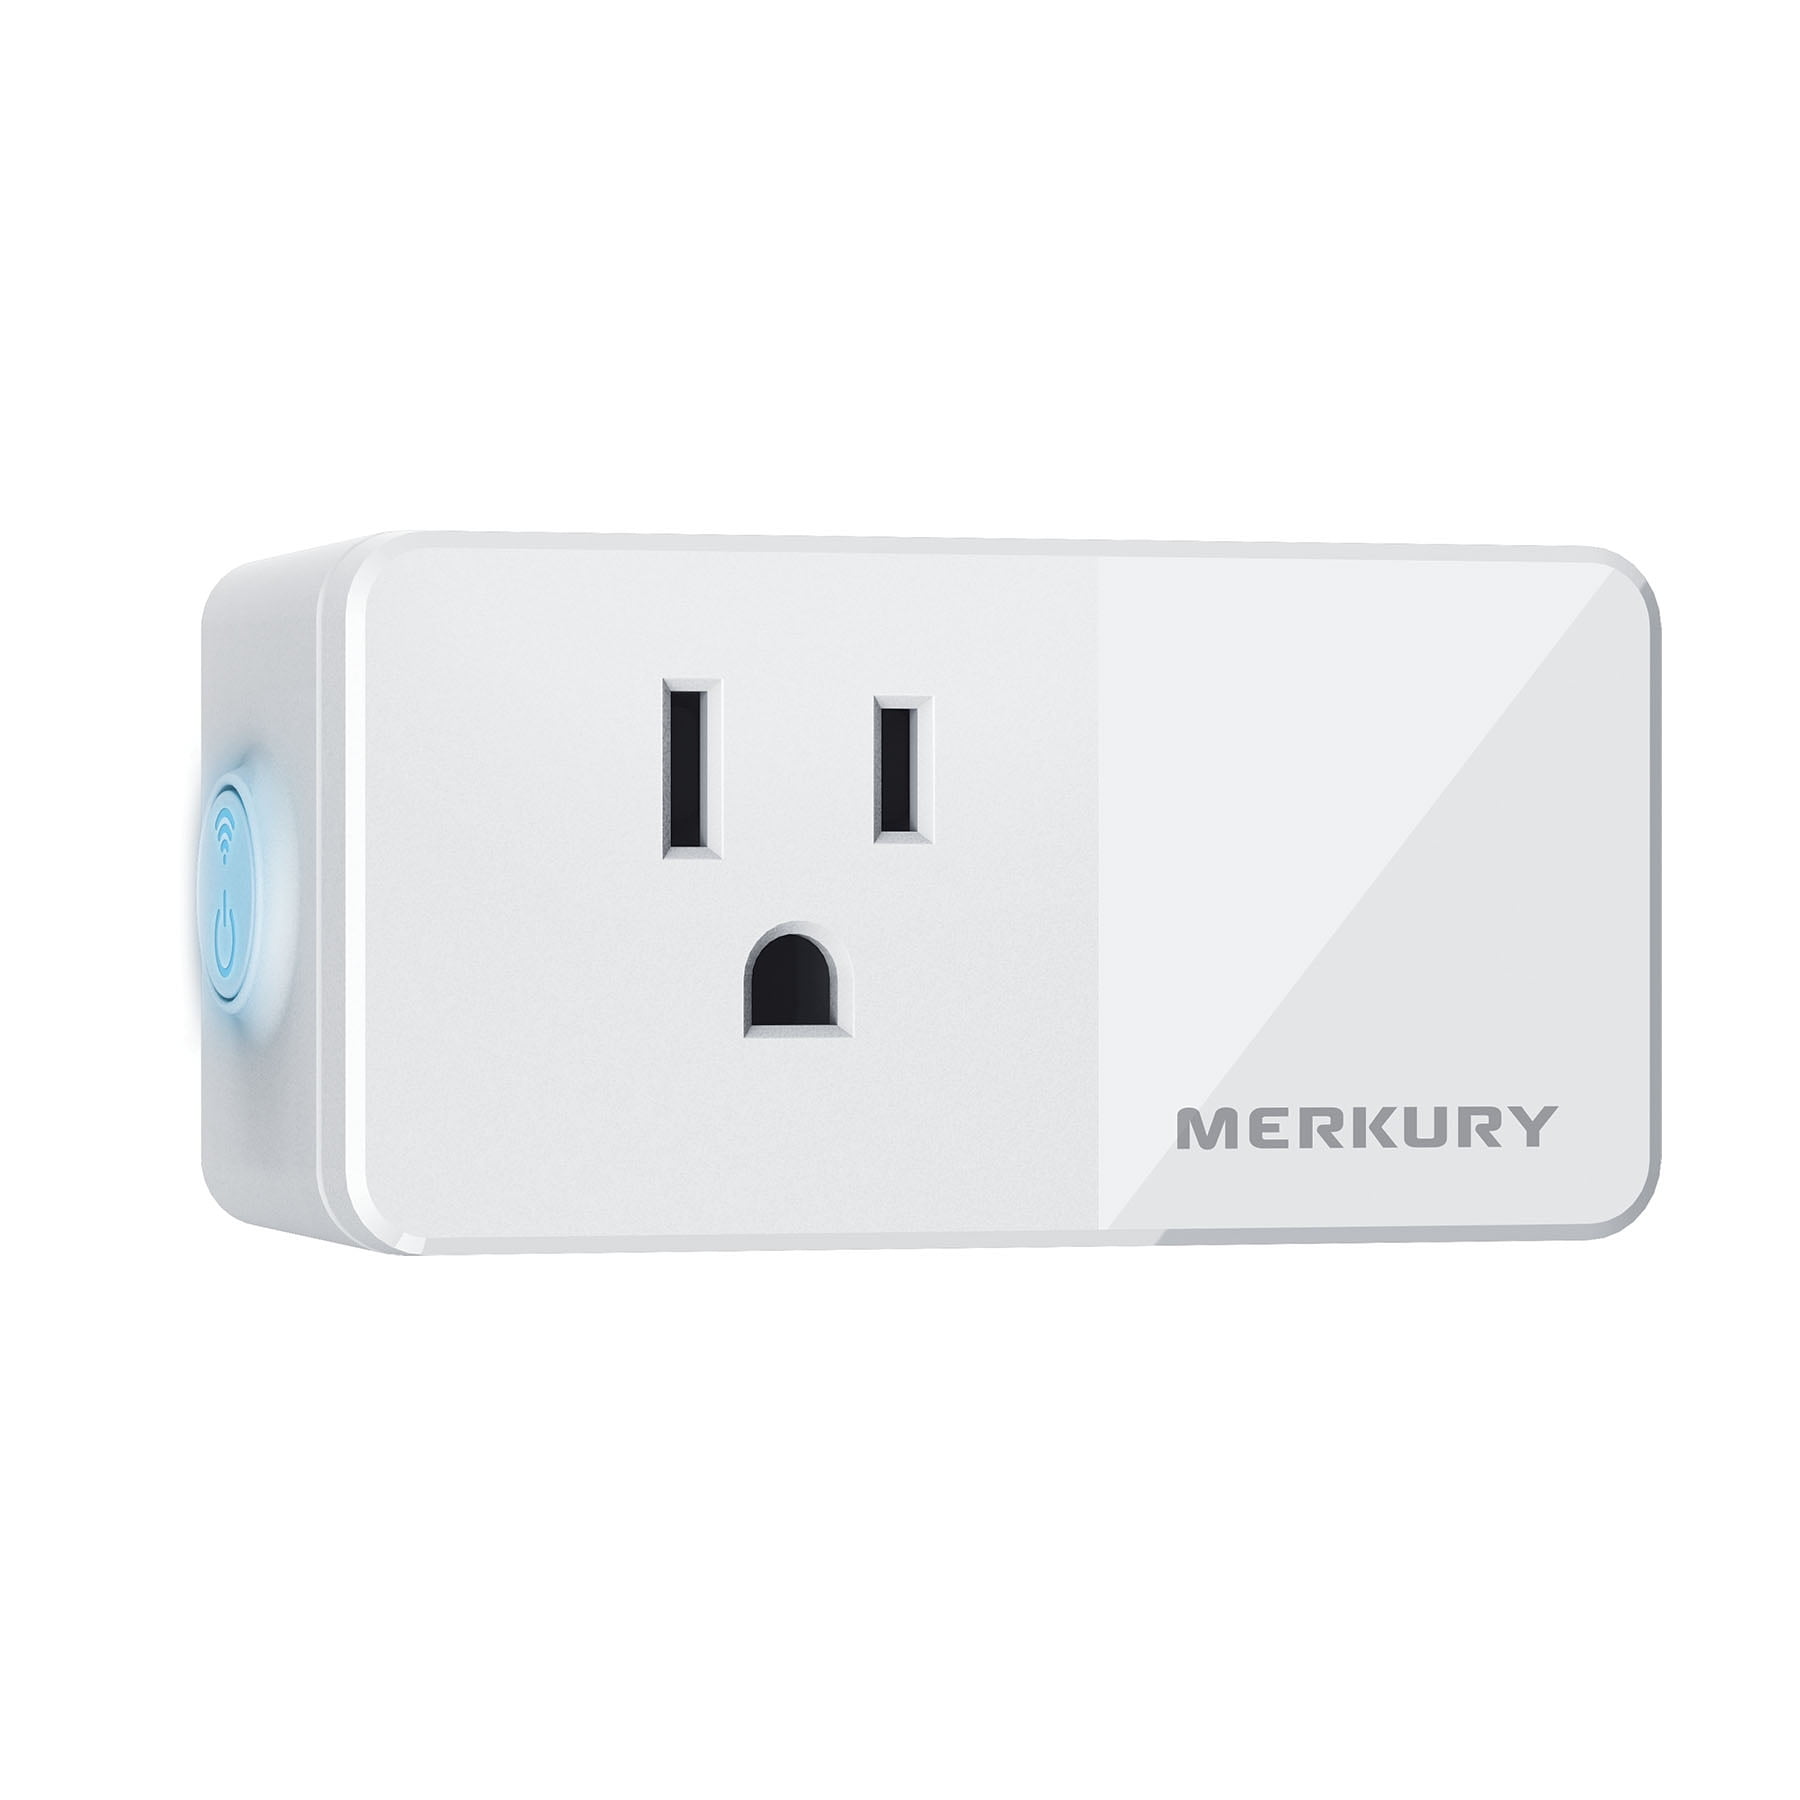 Merkury Innovations Smart Plug, 1-Pack 